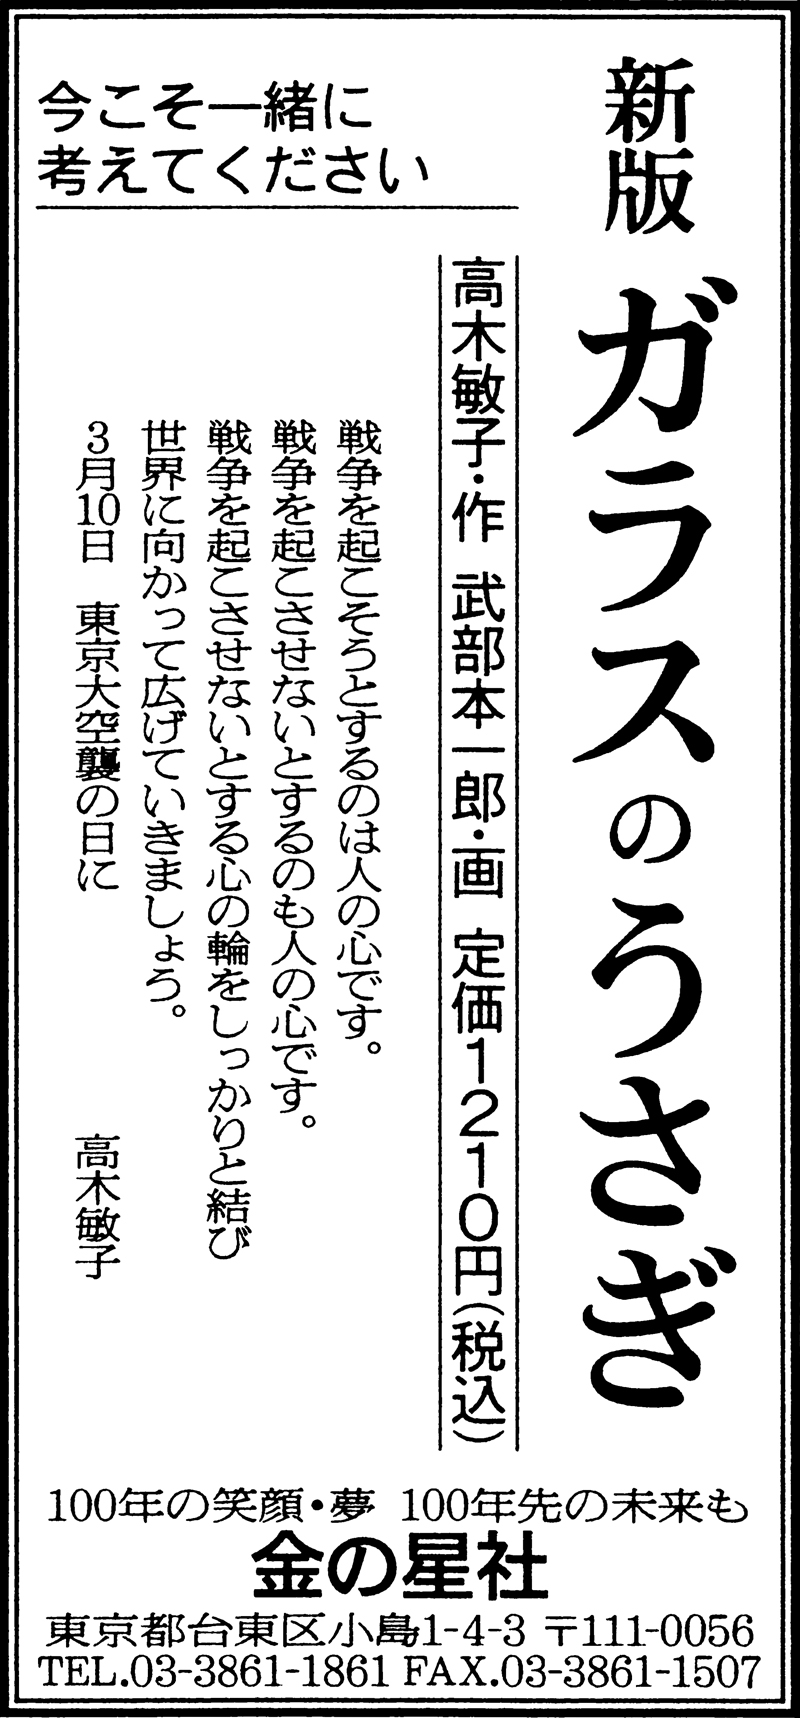 3/11（金）朝日新聞『新版 ガラスのうさぎ』広告掲載